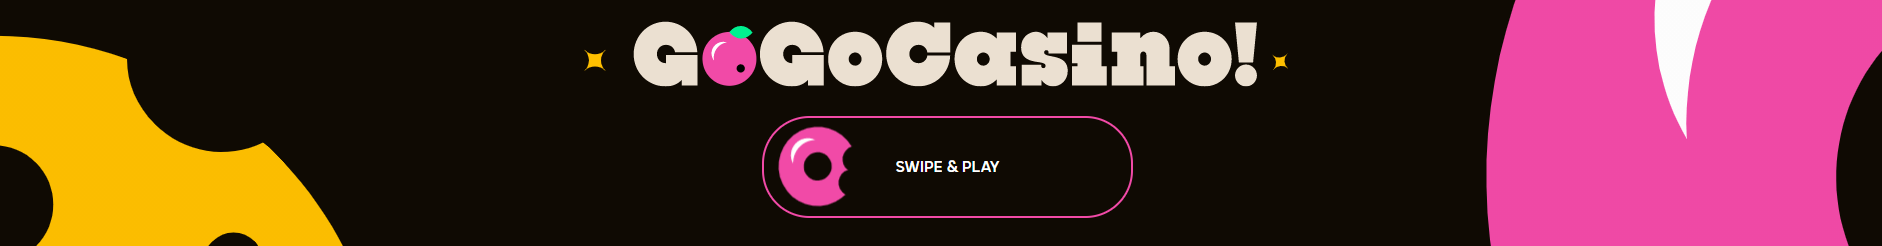 Swipe and Play - GoGo Casino